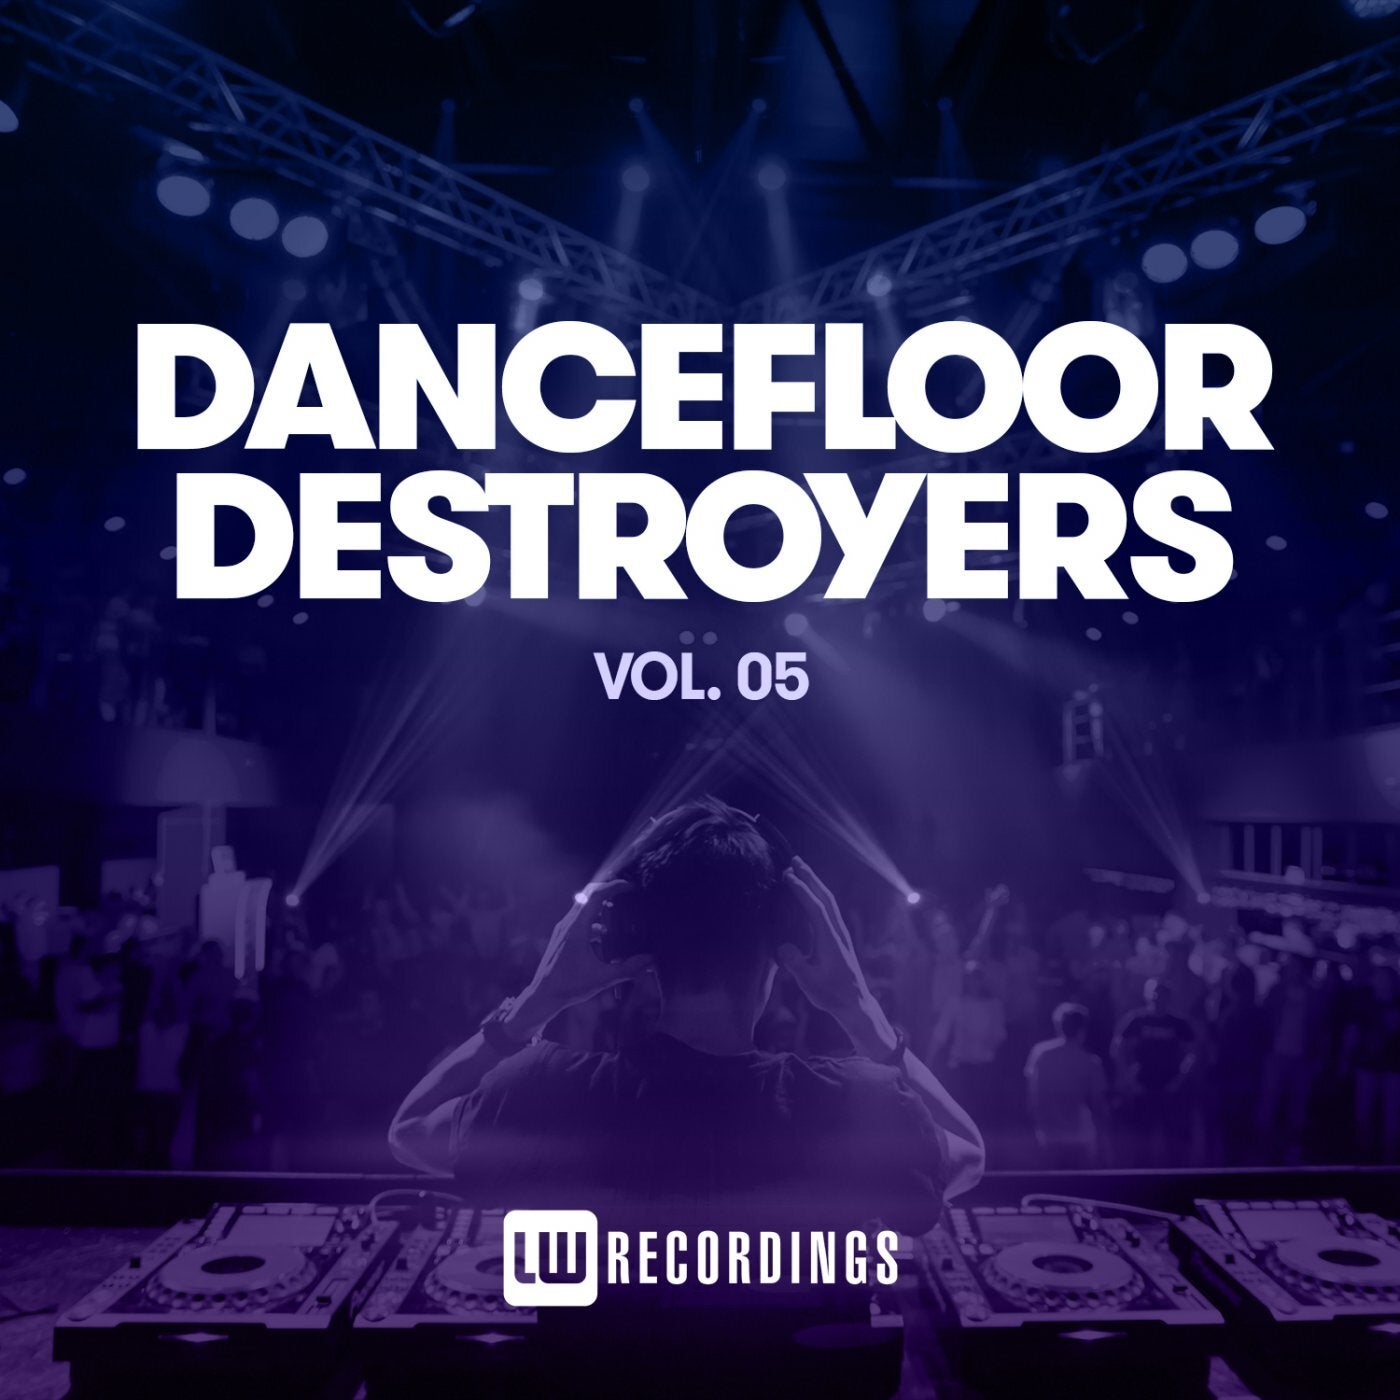 Dancefloor Destroyers, Vol. 05